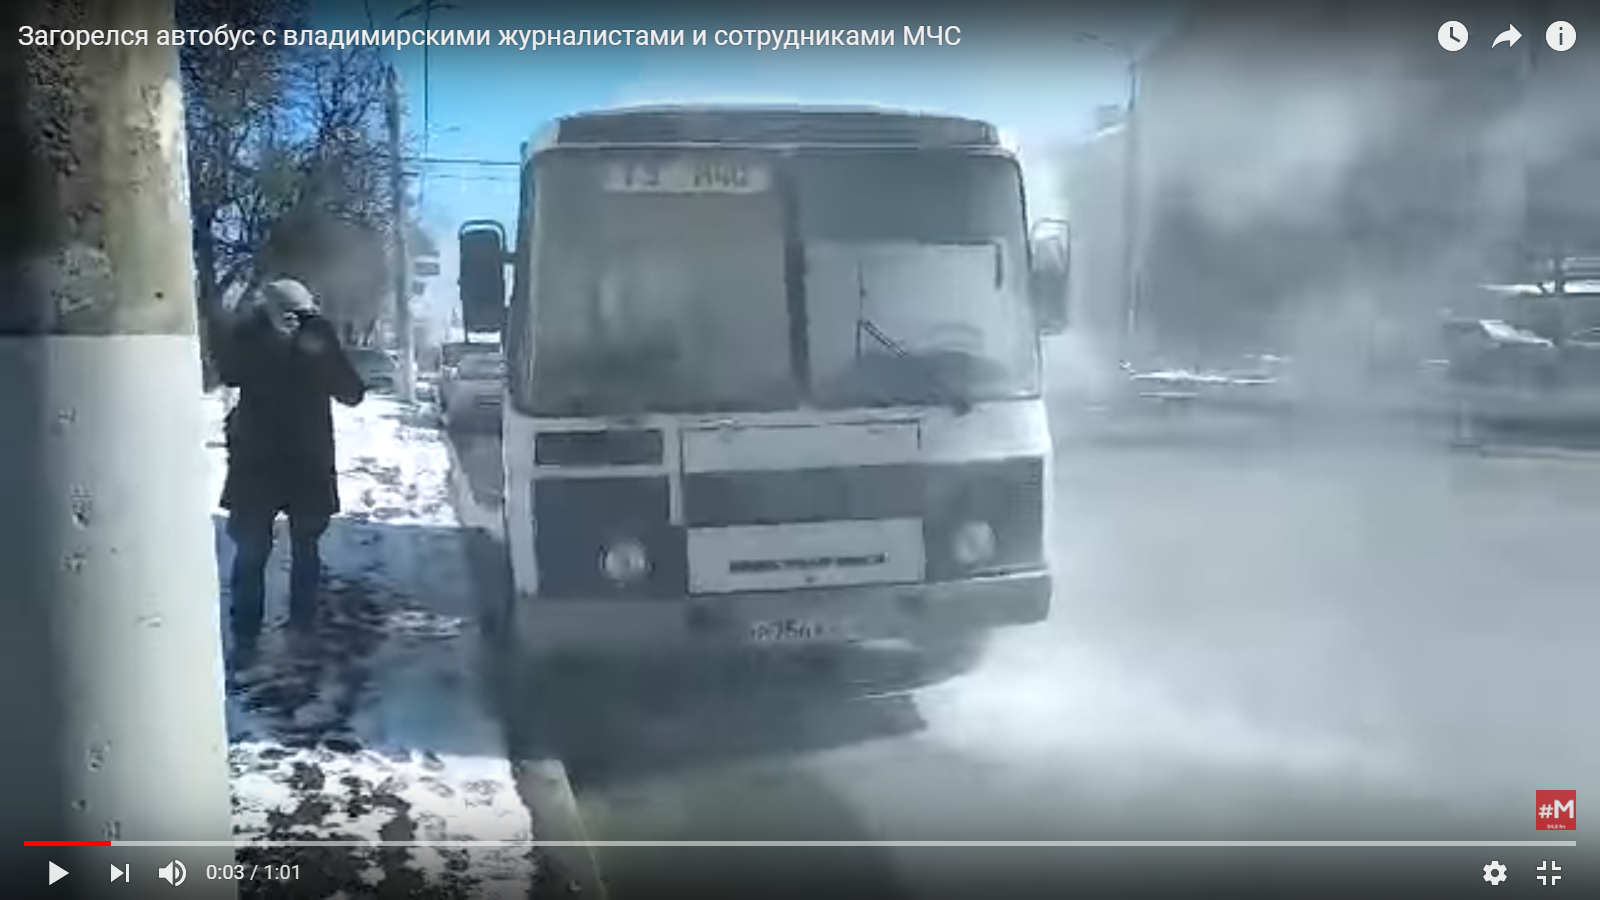 Видео дня: во Владимире загорелся автобус с пожарной инспекцией